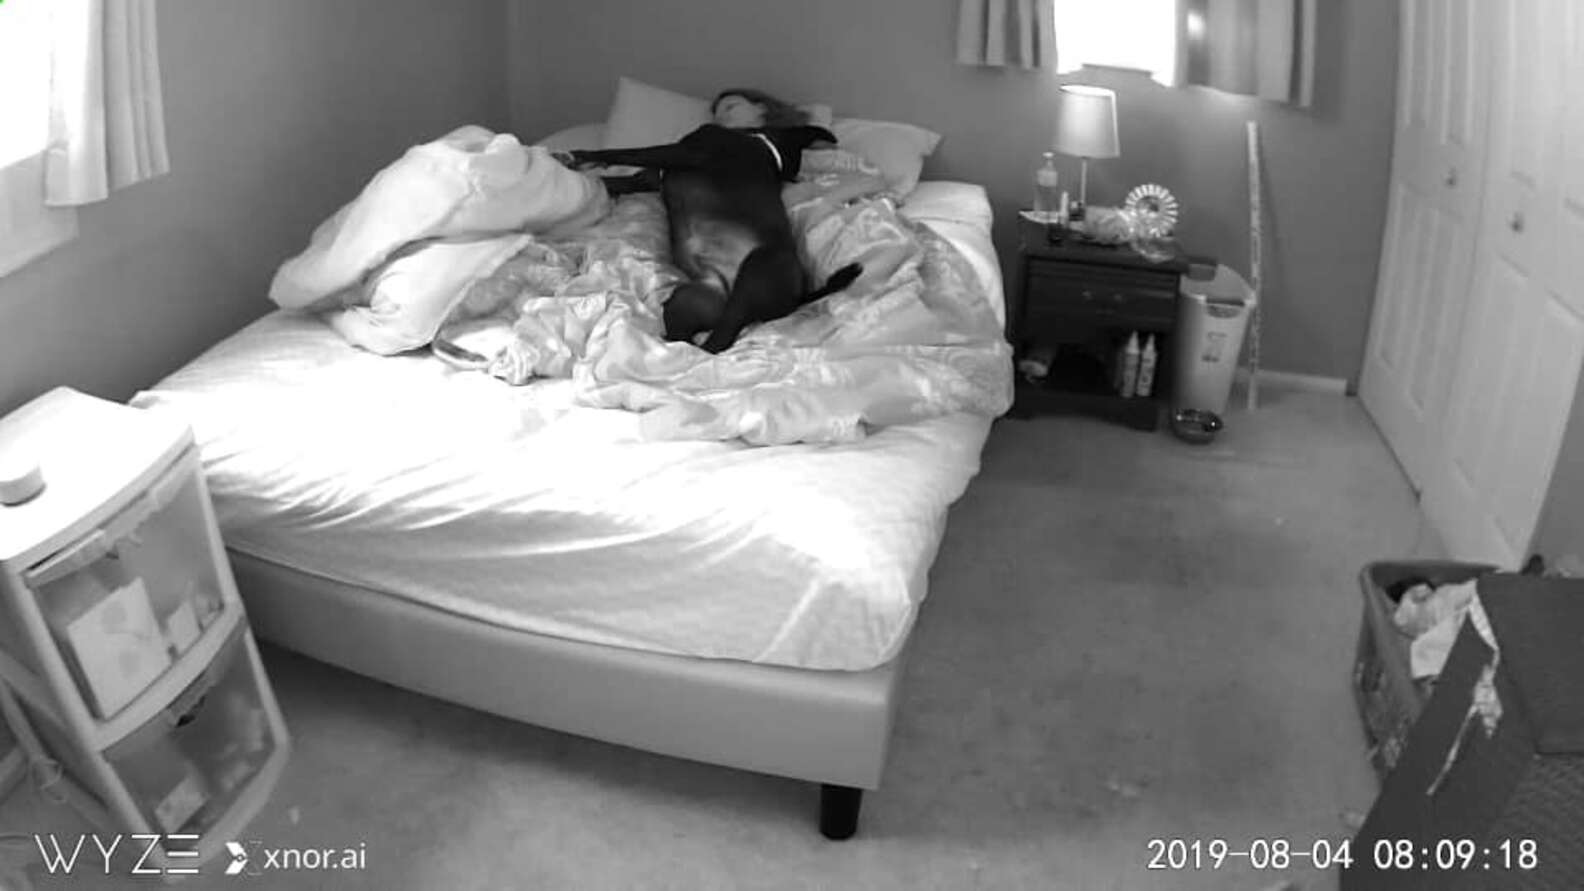 Мужчина установил видео камеру в спальне и снял домашнее порно с женой в позе раком